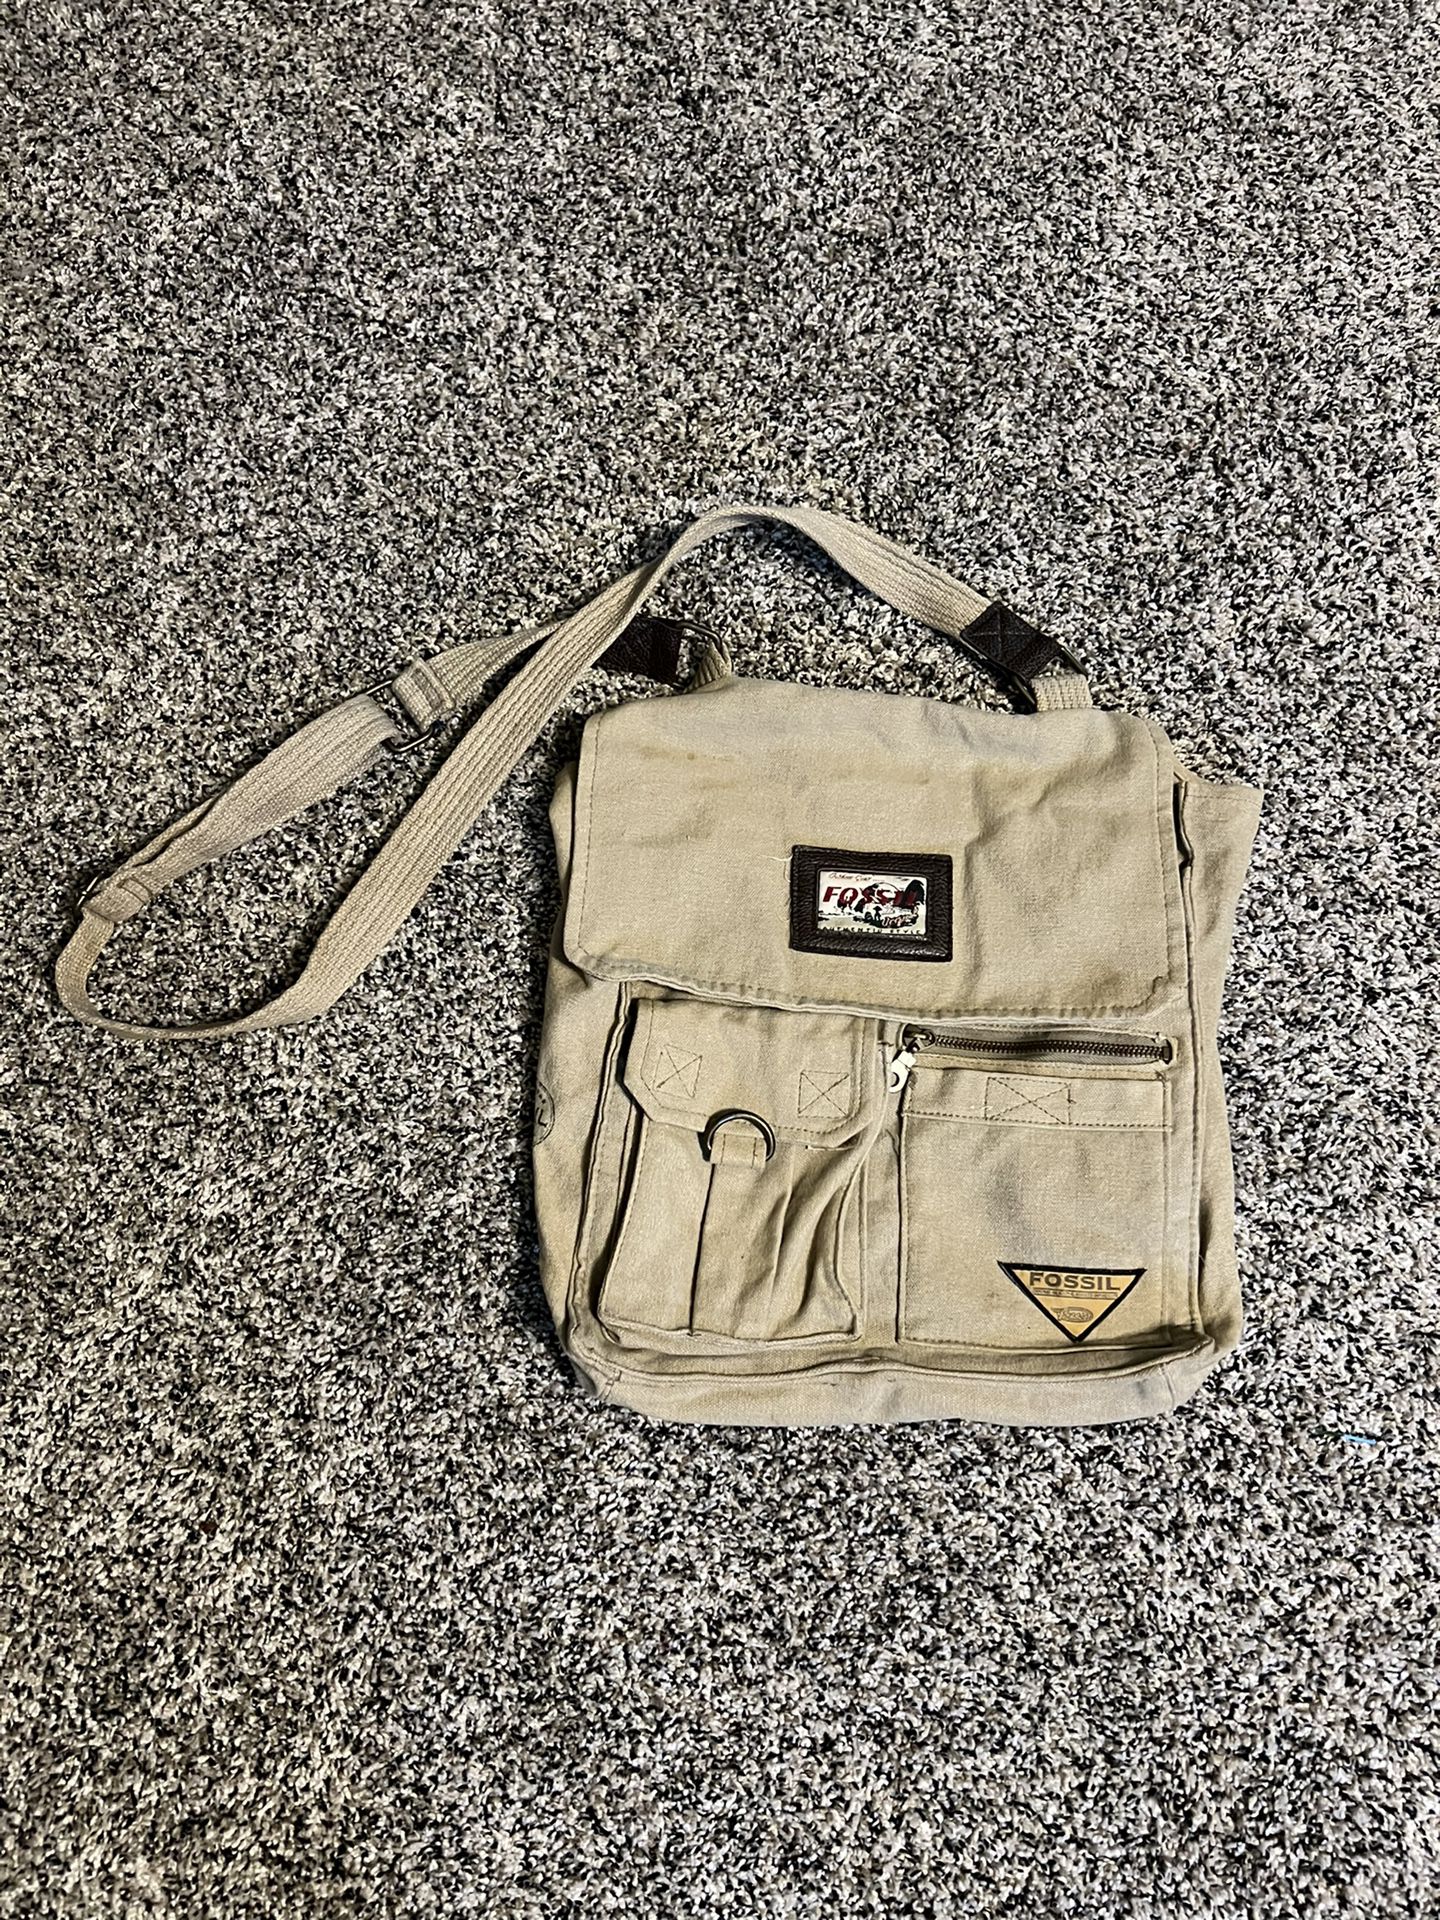 Vintage Fossil Messenger Bag